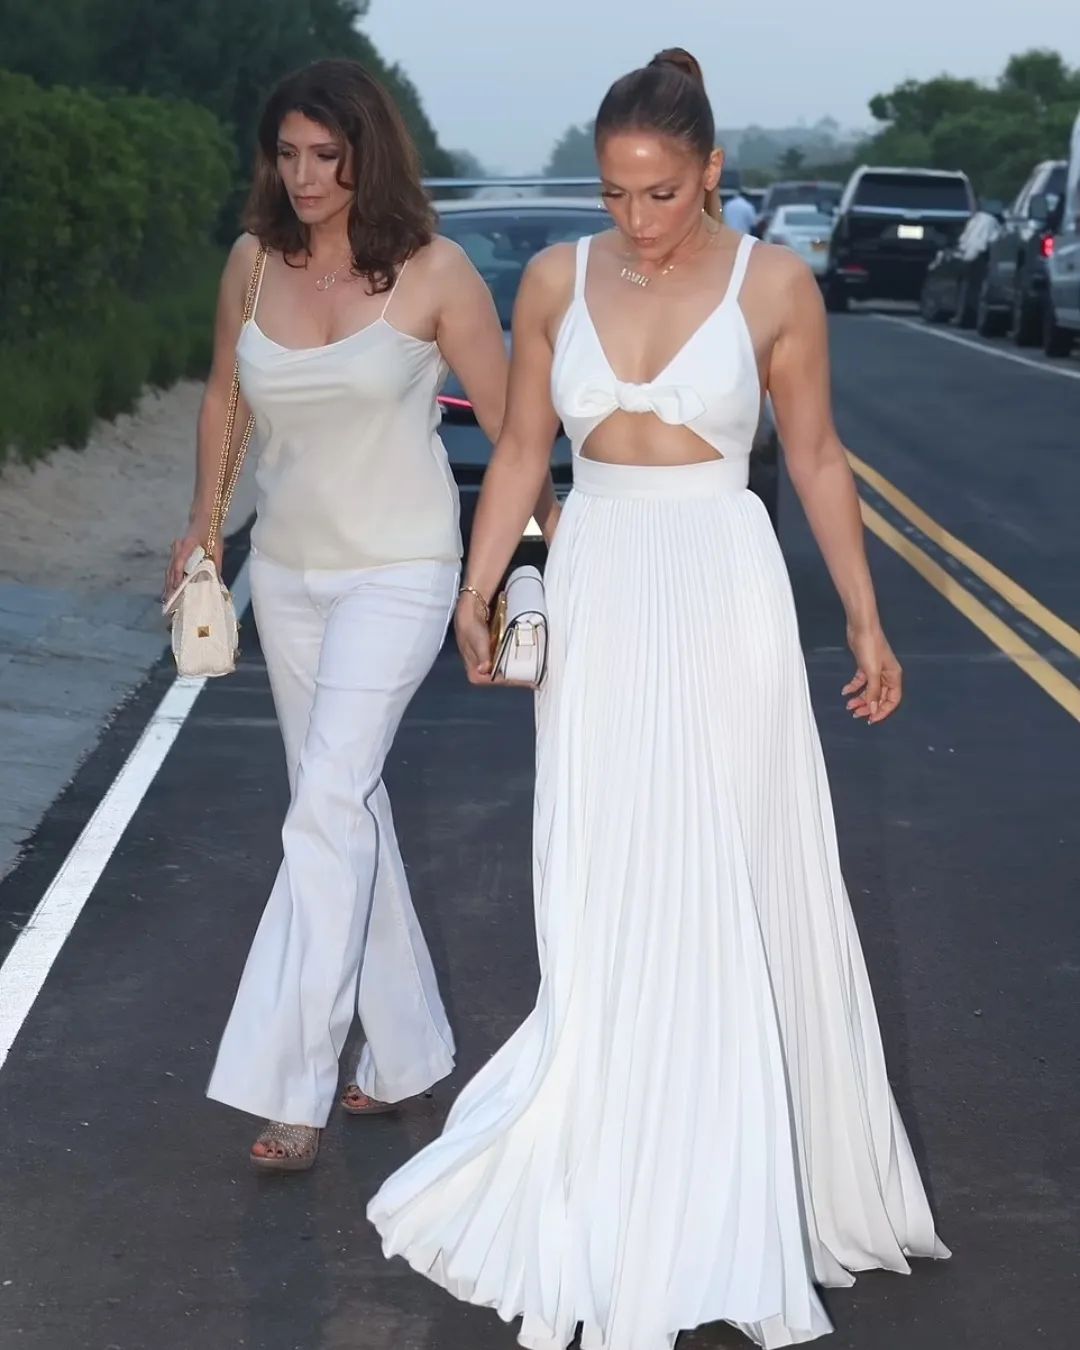 Дженніфер Лопес у білій сукні з відкритою спиною зачарувала милим літнім вбранням